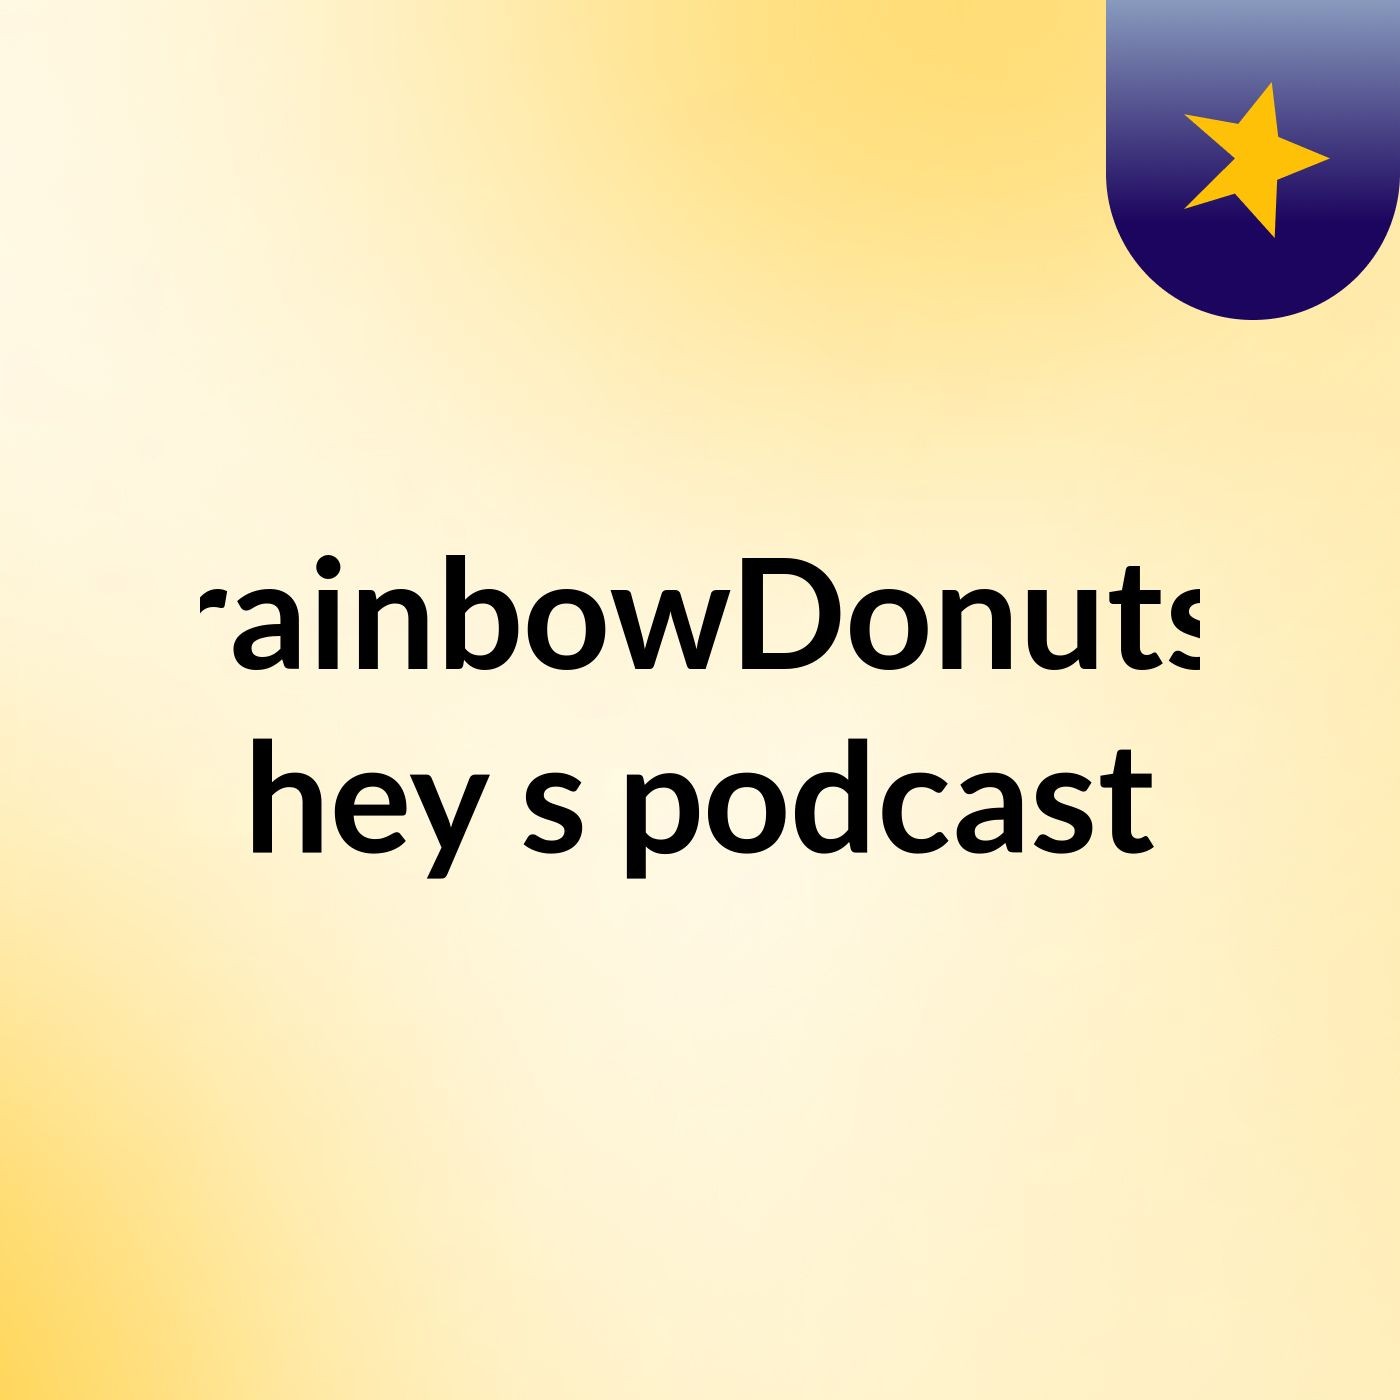 rainbowDonuts hey's podcast